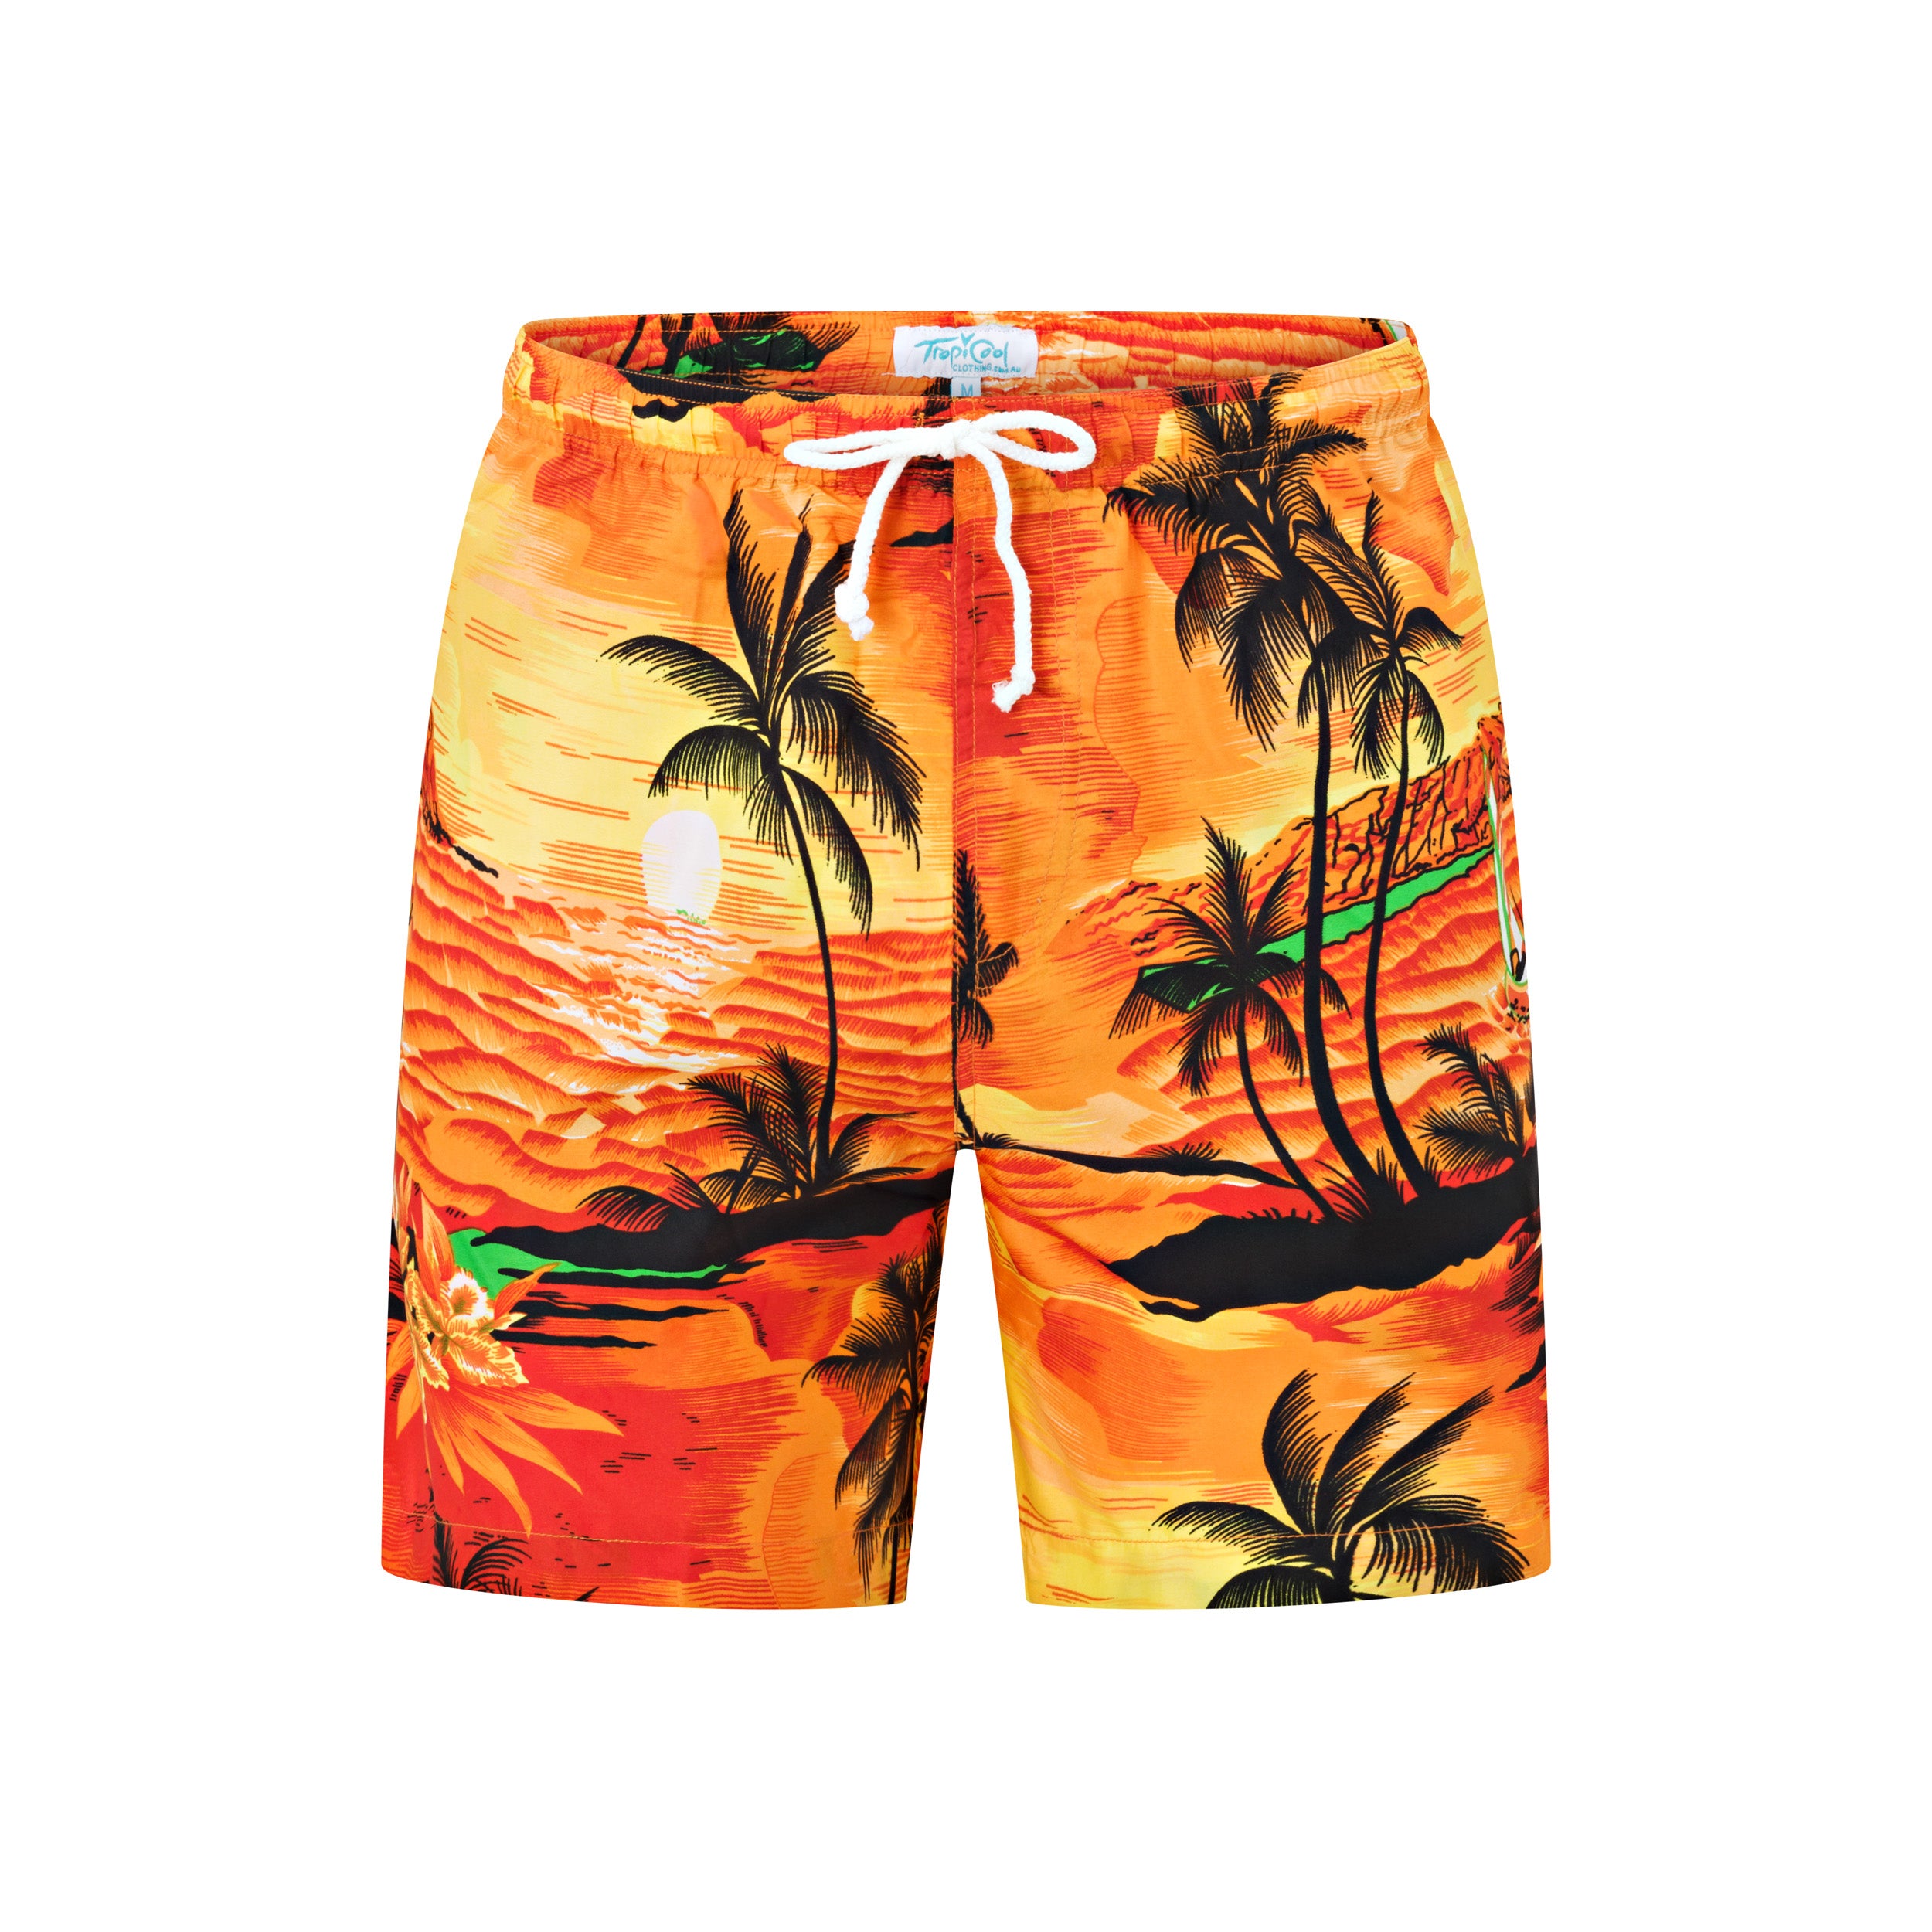 Sunset Orange Adult Shorts